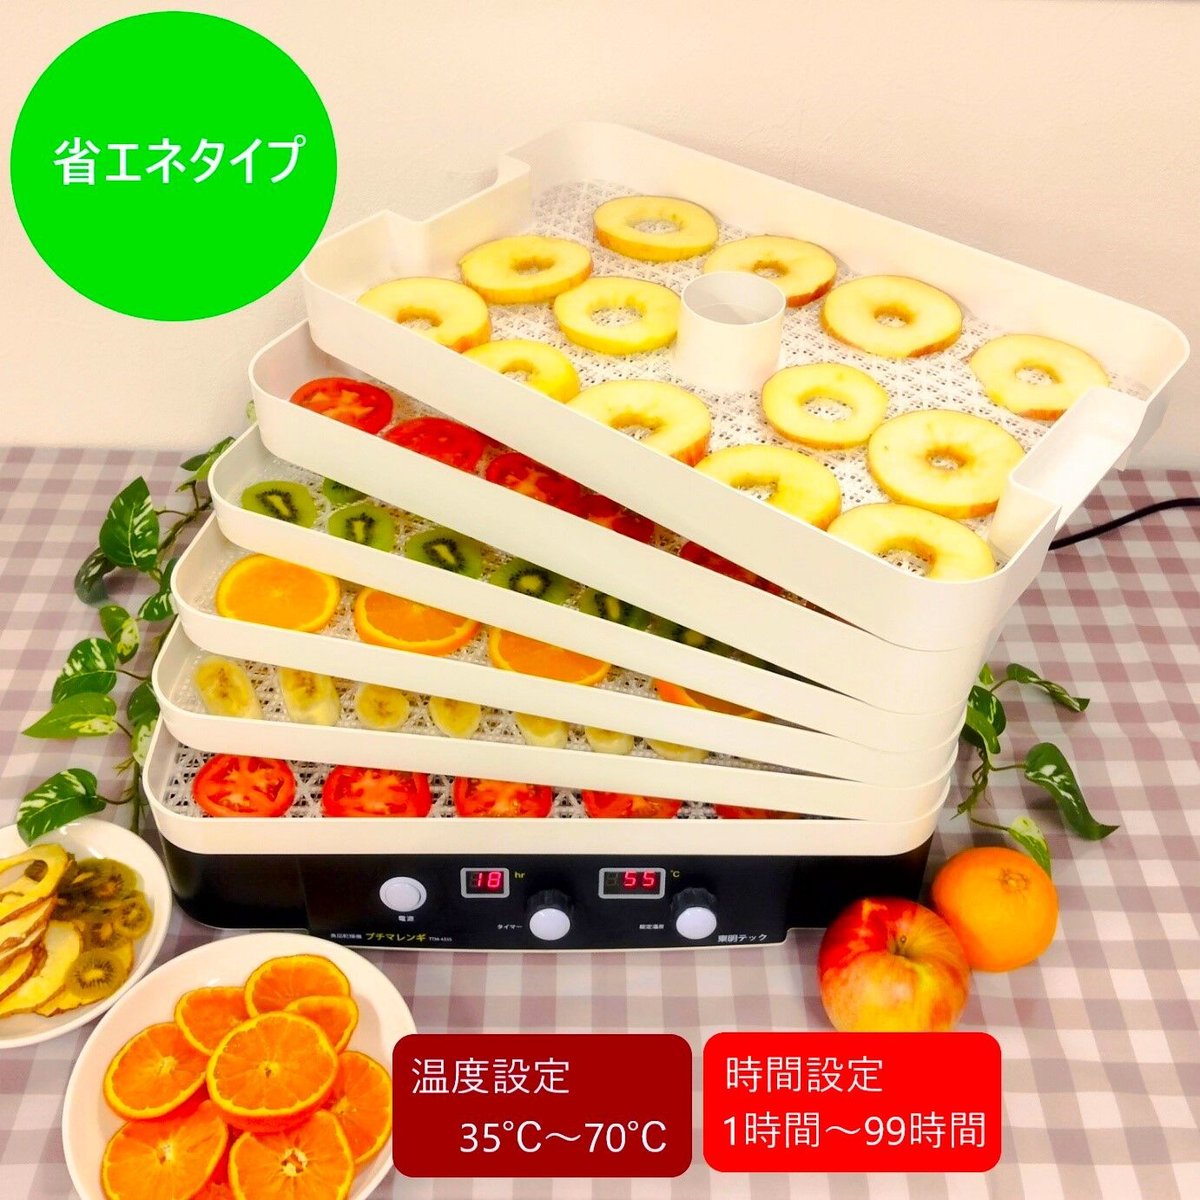 TOHMEI 東明テック  家庭用食品乾燥機 プチマレンギDX TTM-440N - 2